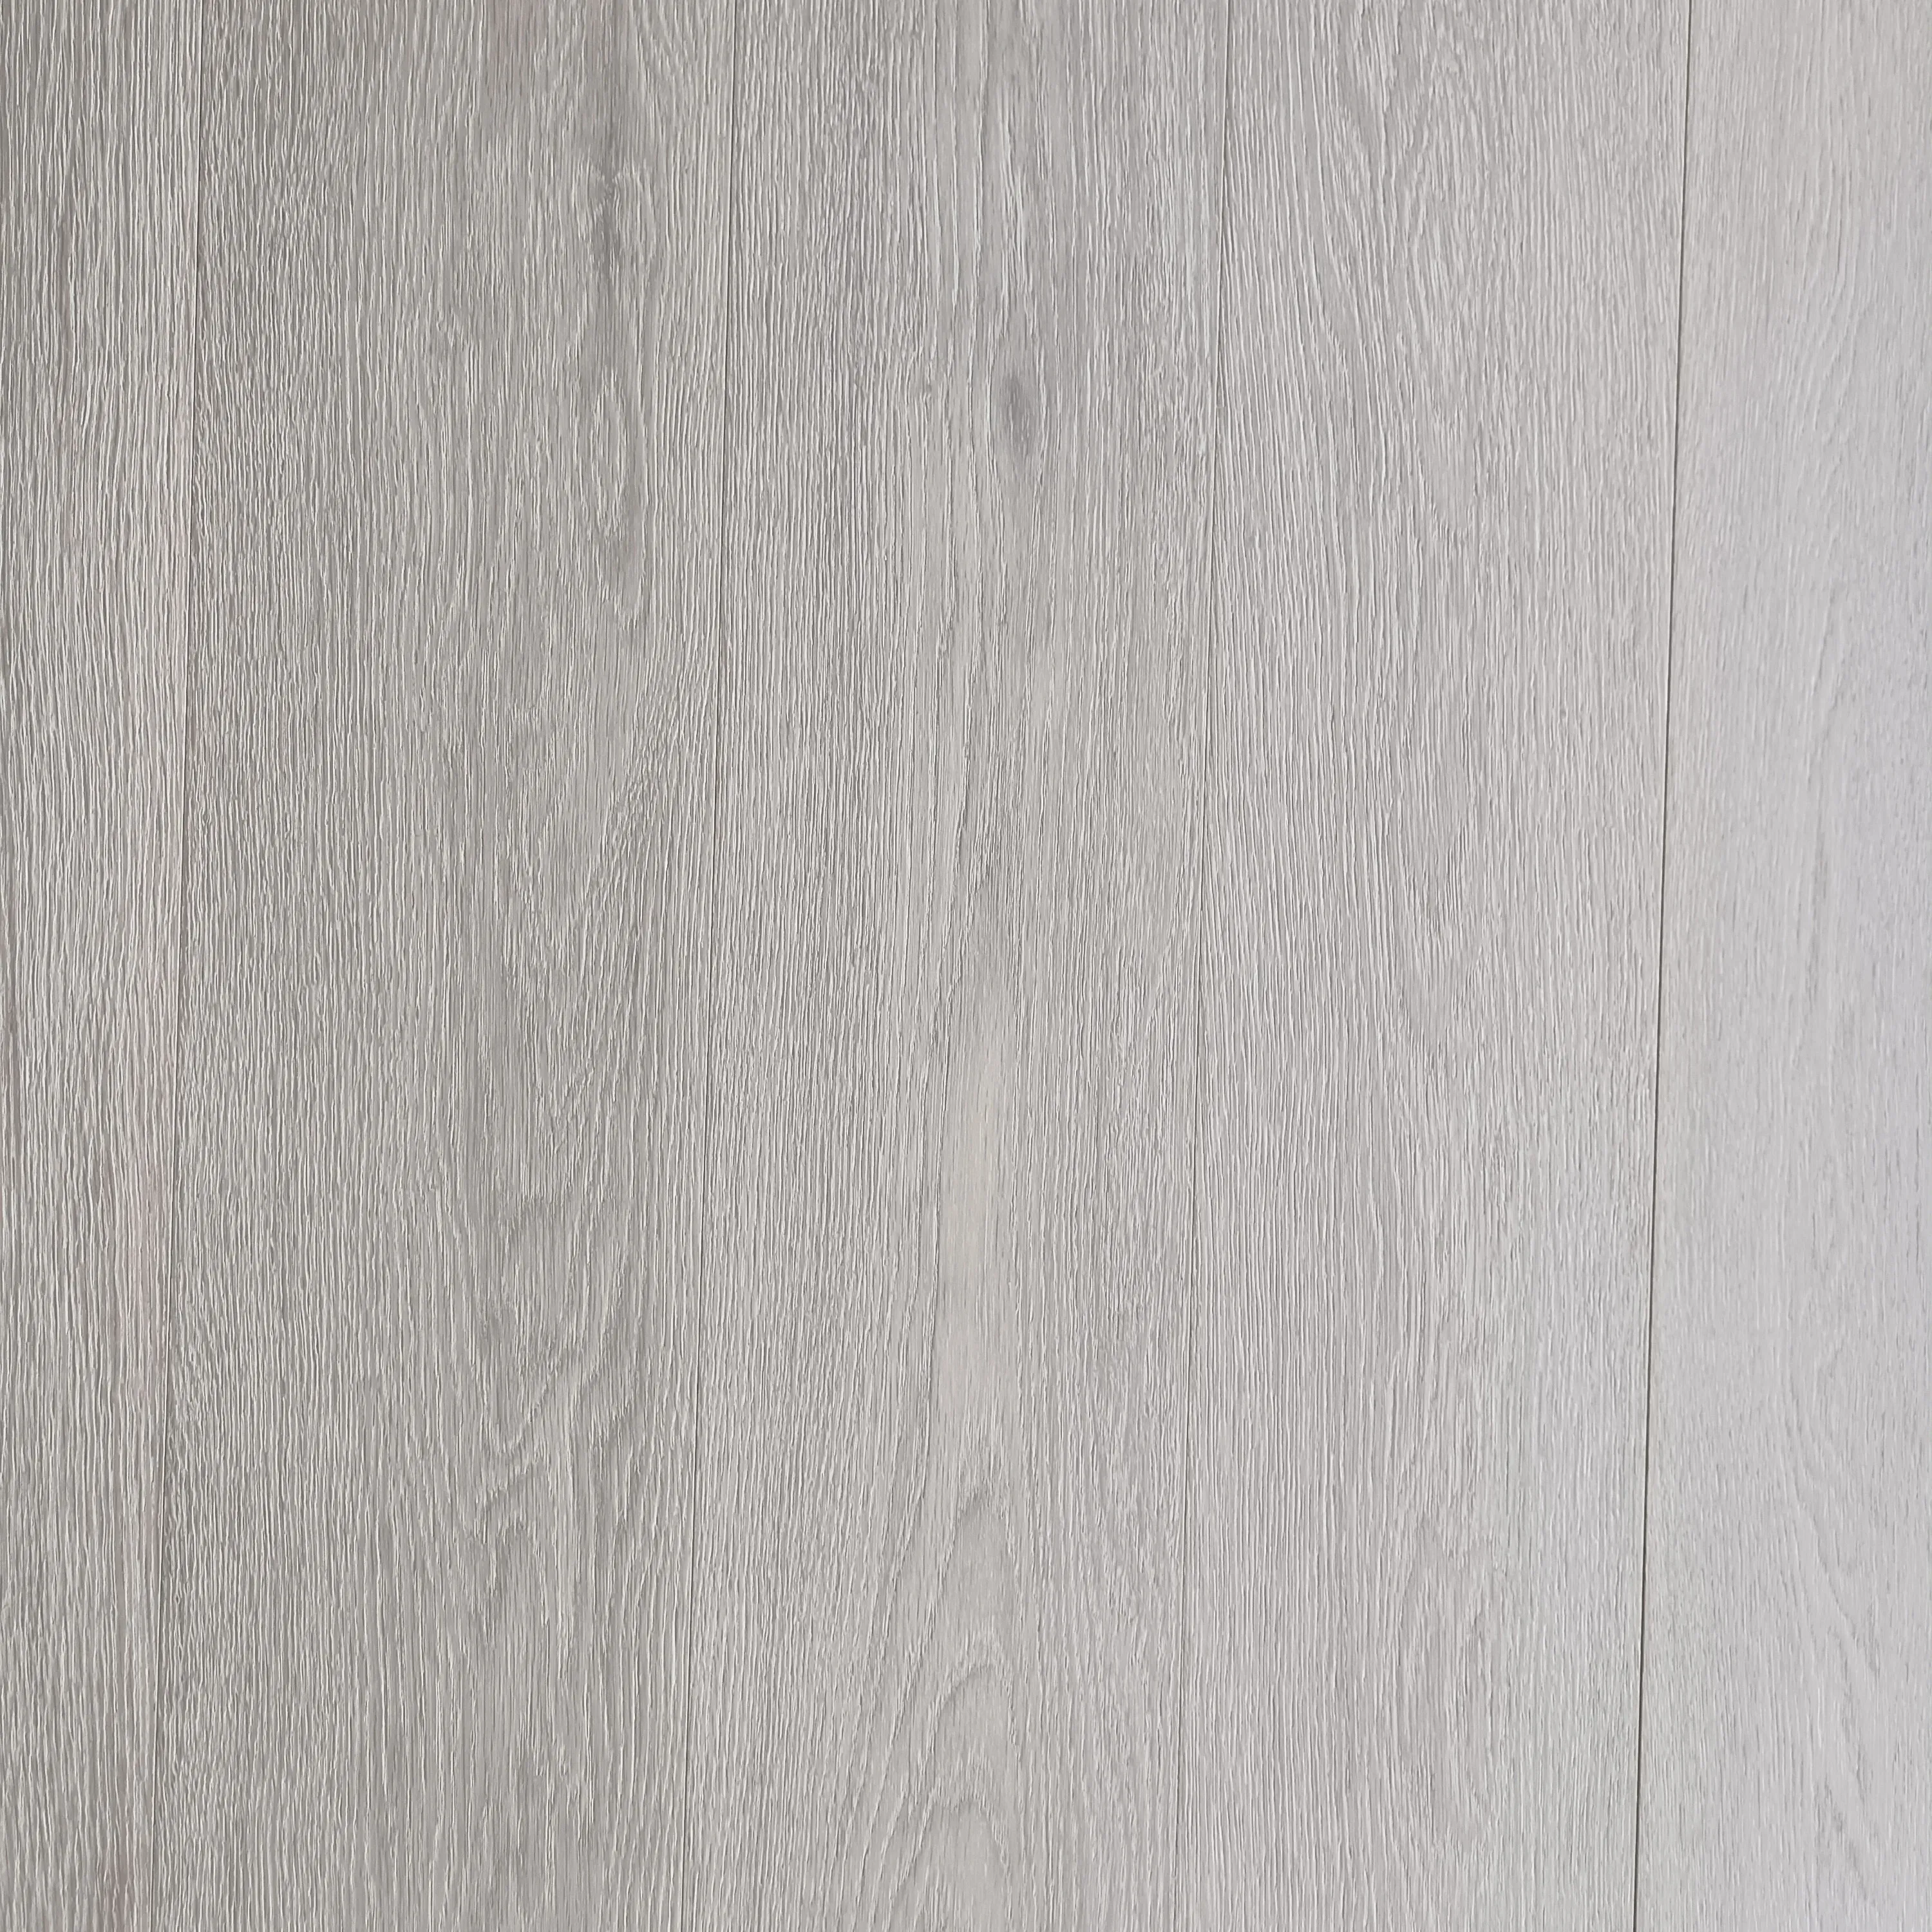 Maestoso multi-strato pavimento in rovere bianco ingegnerizzato in legno duro impermeabile